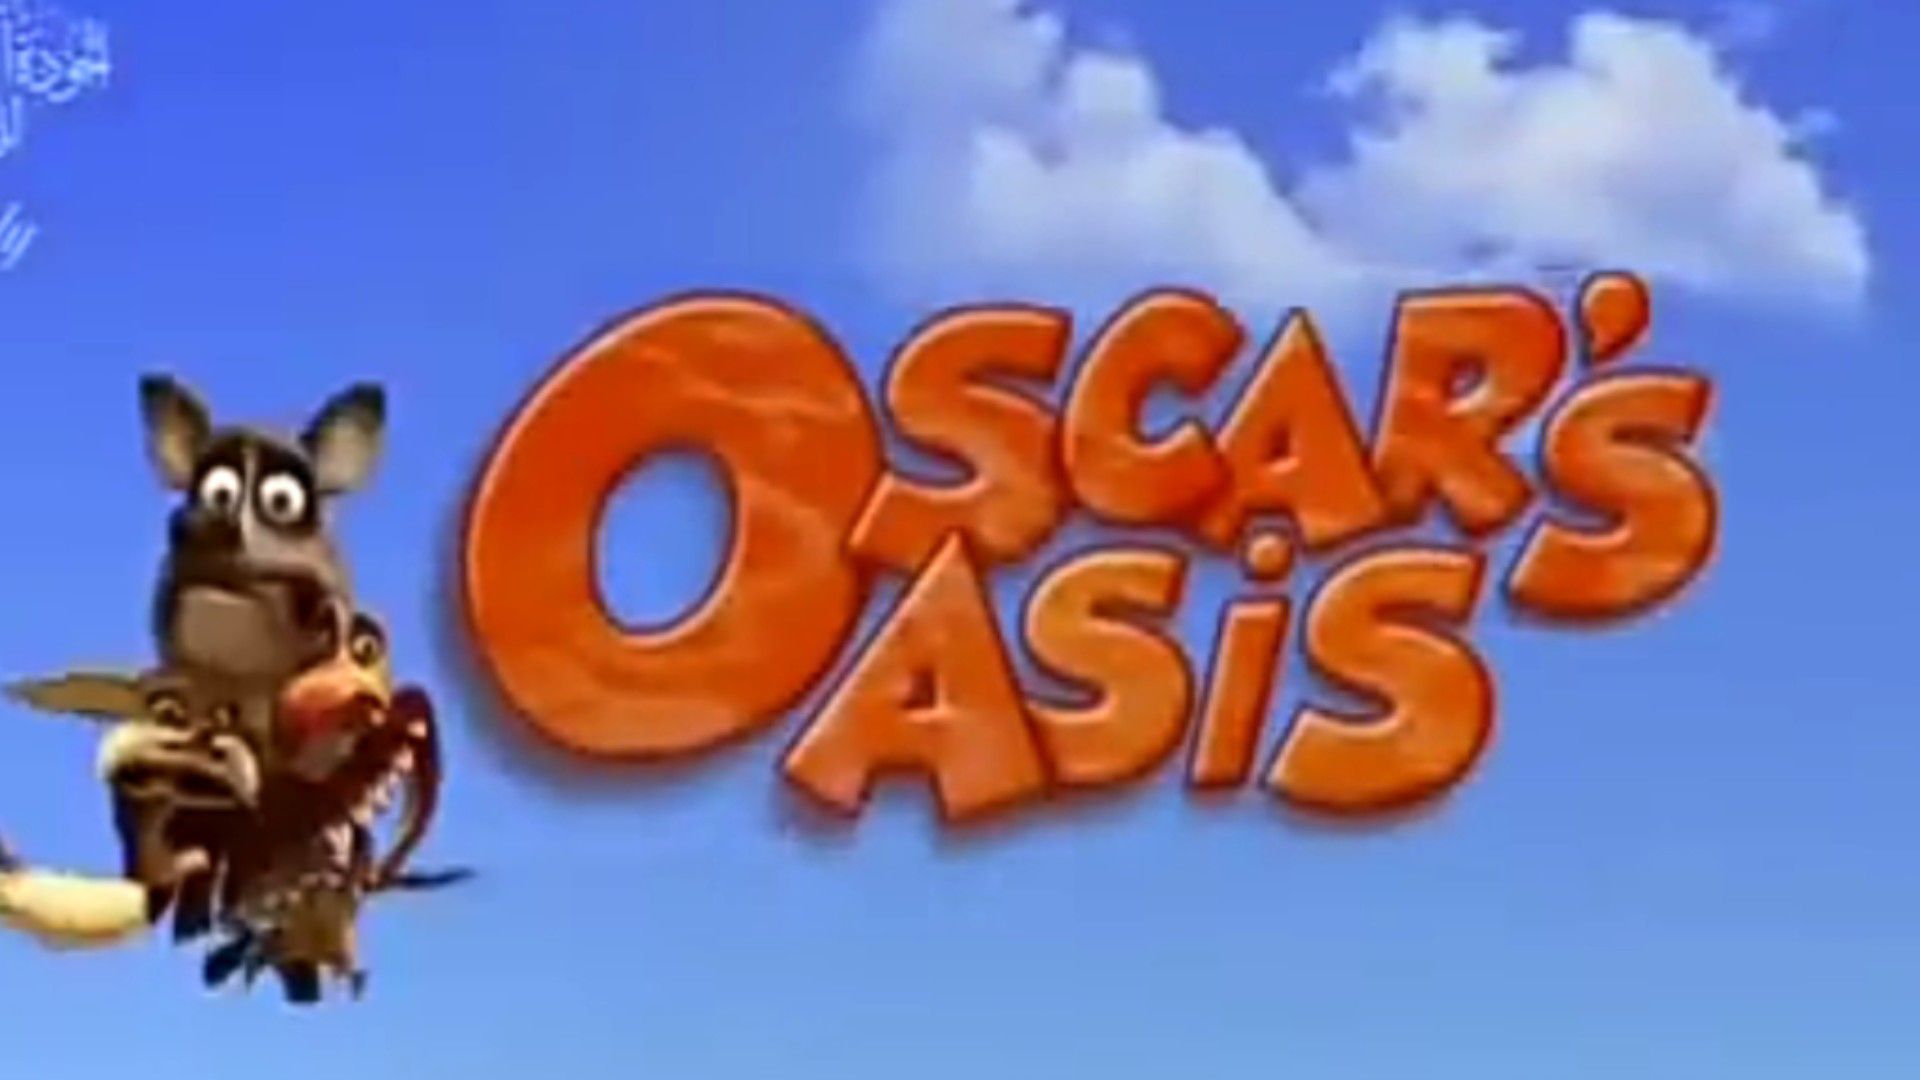 Óscar's oasis  Kid movies, Best cartoon movies, Animated movies